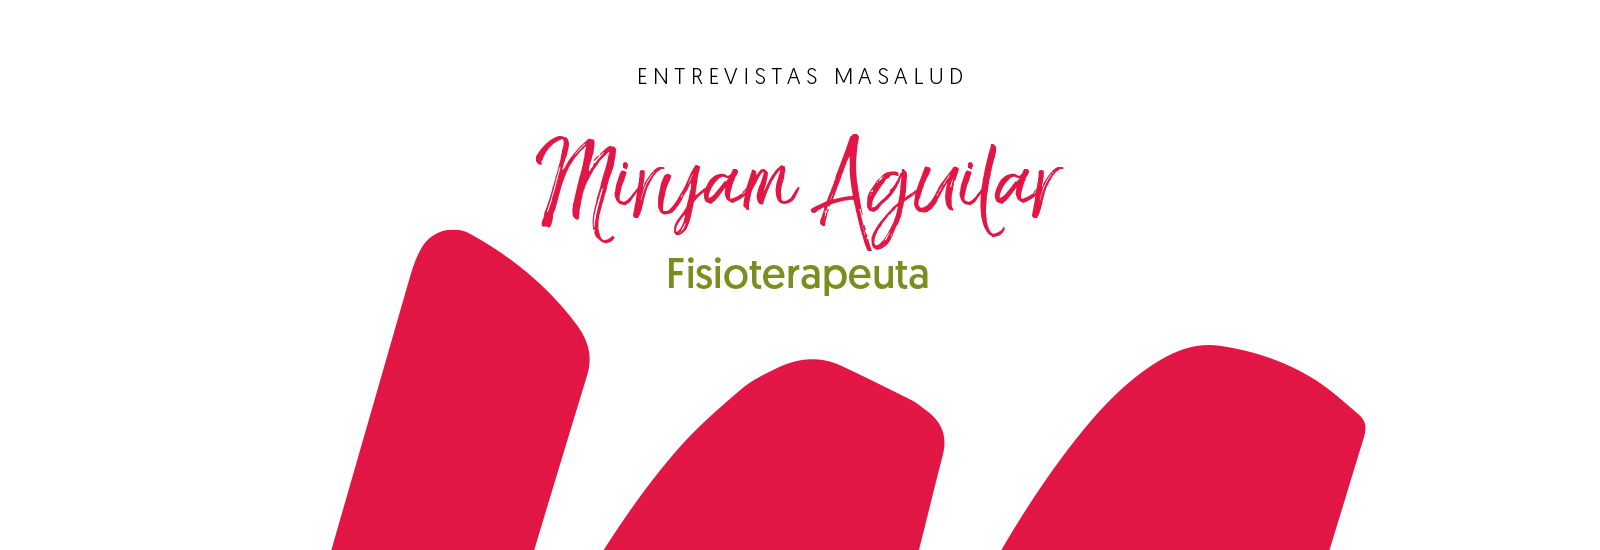 Más Masalud, Miryam Aguilar Fisioterapeuta